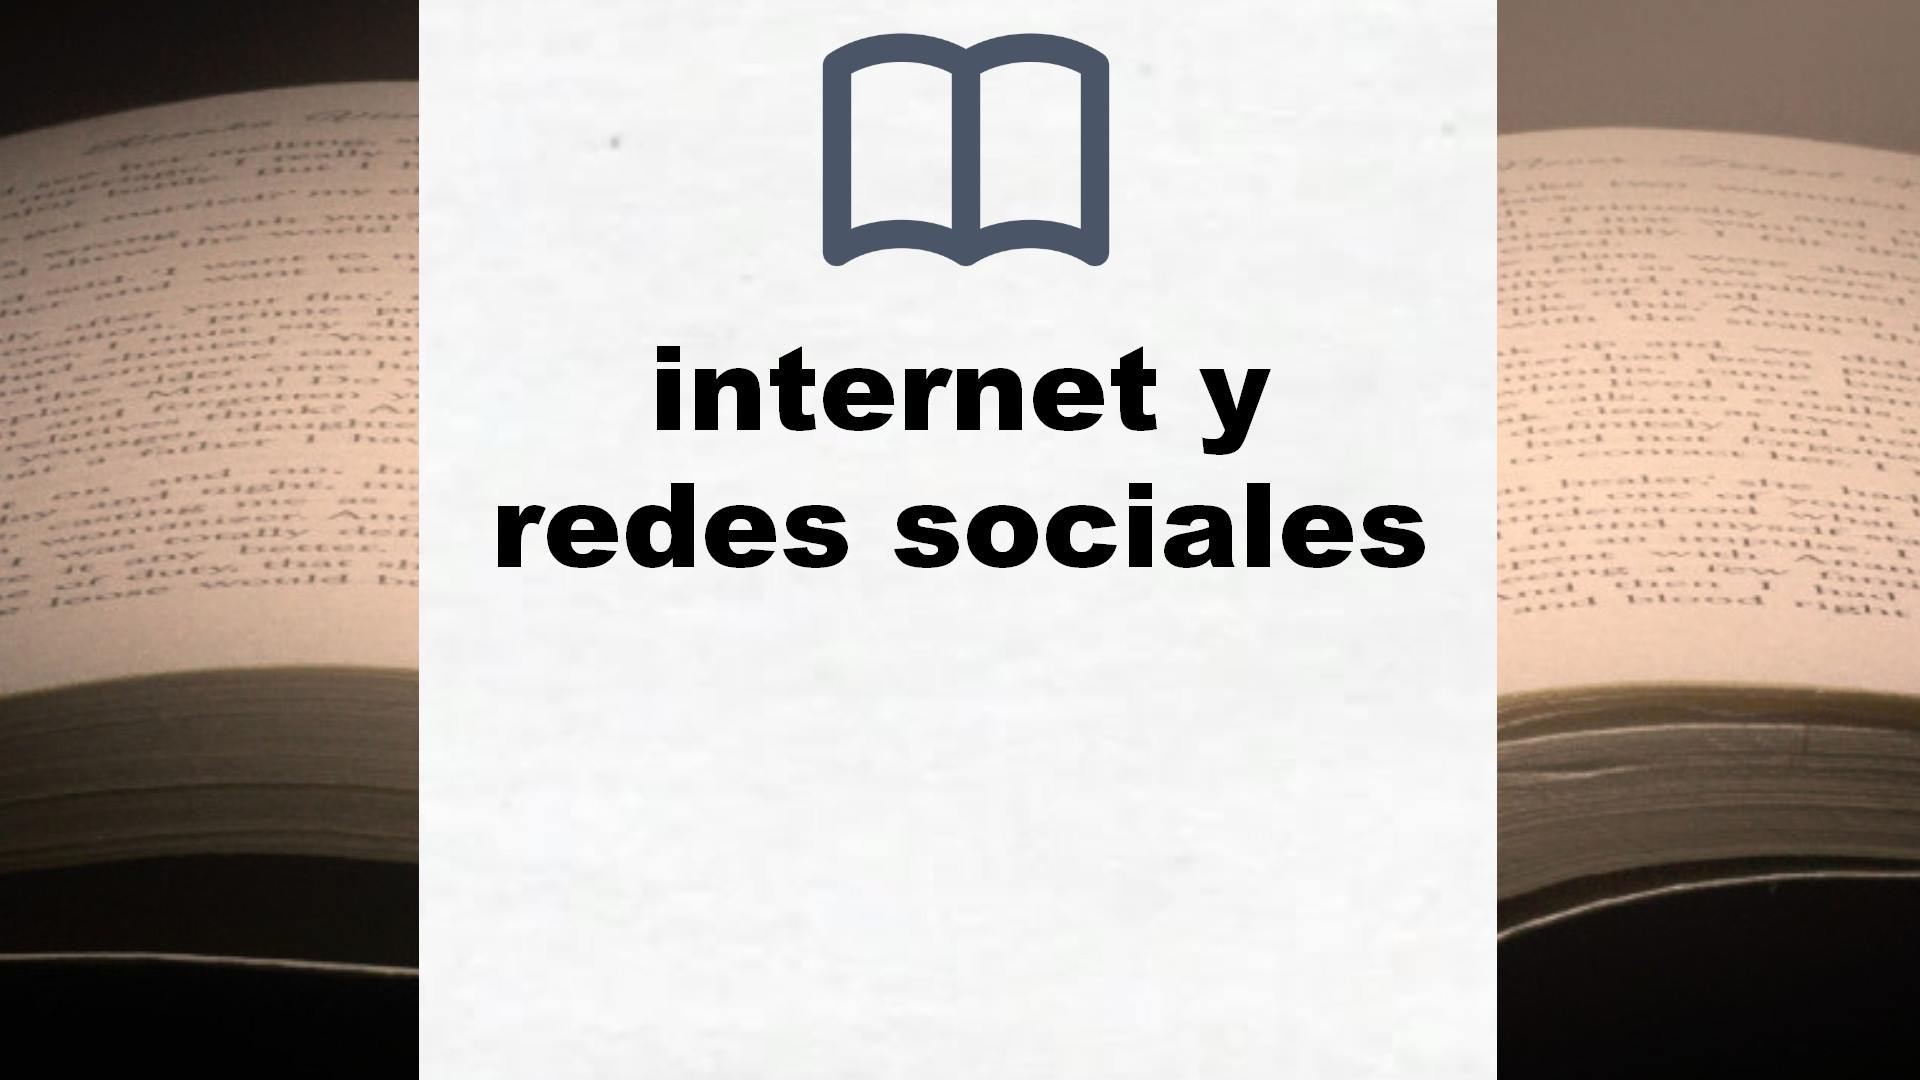 Libros sobre internet y redes sociales